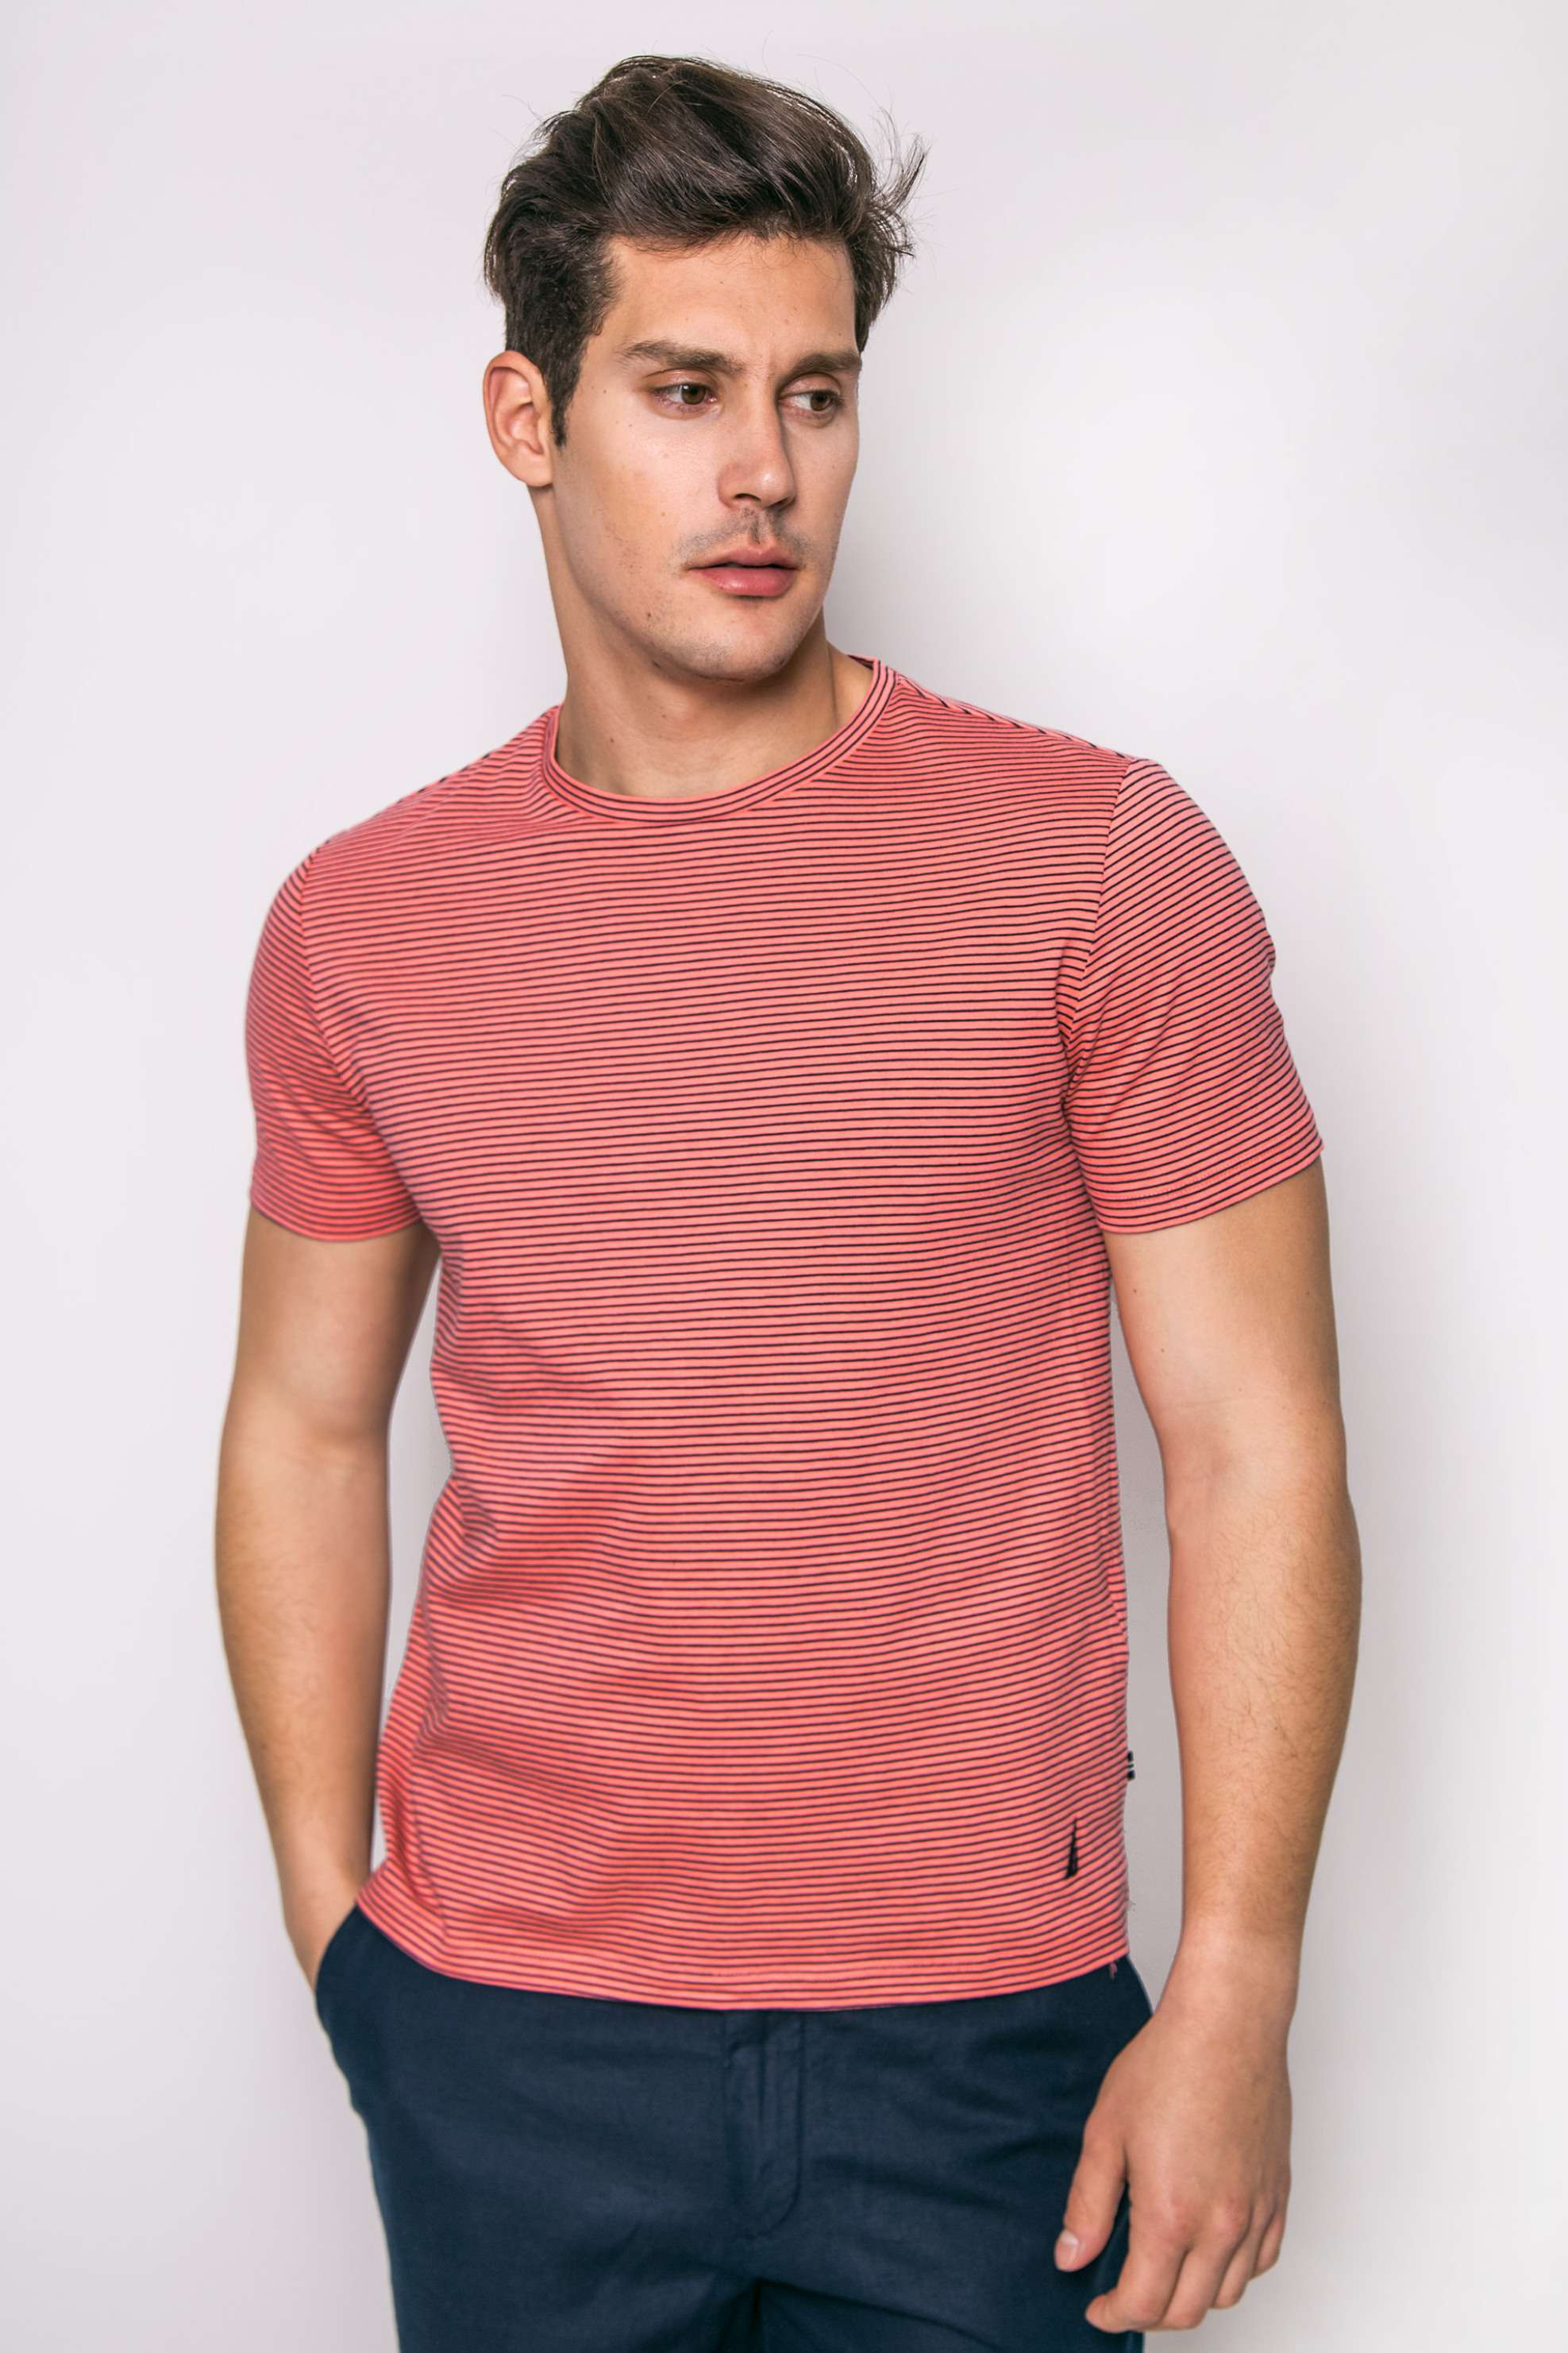 Άνδρας > ΡΟΥΧΑ > Μπλούζες > T-Shirts Ανδρικό T-shirt, Nautica - V71601 Κοραλί